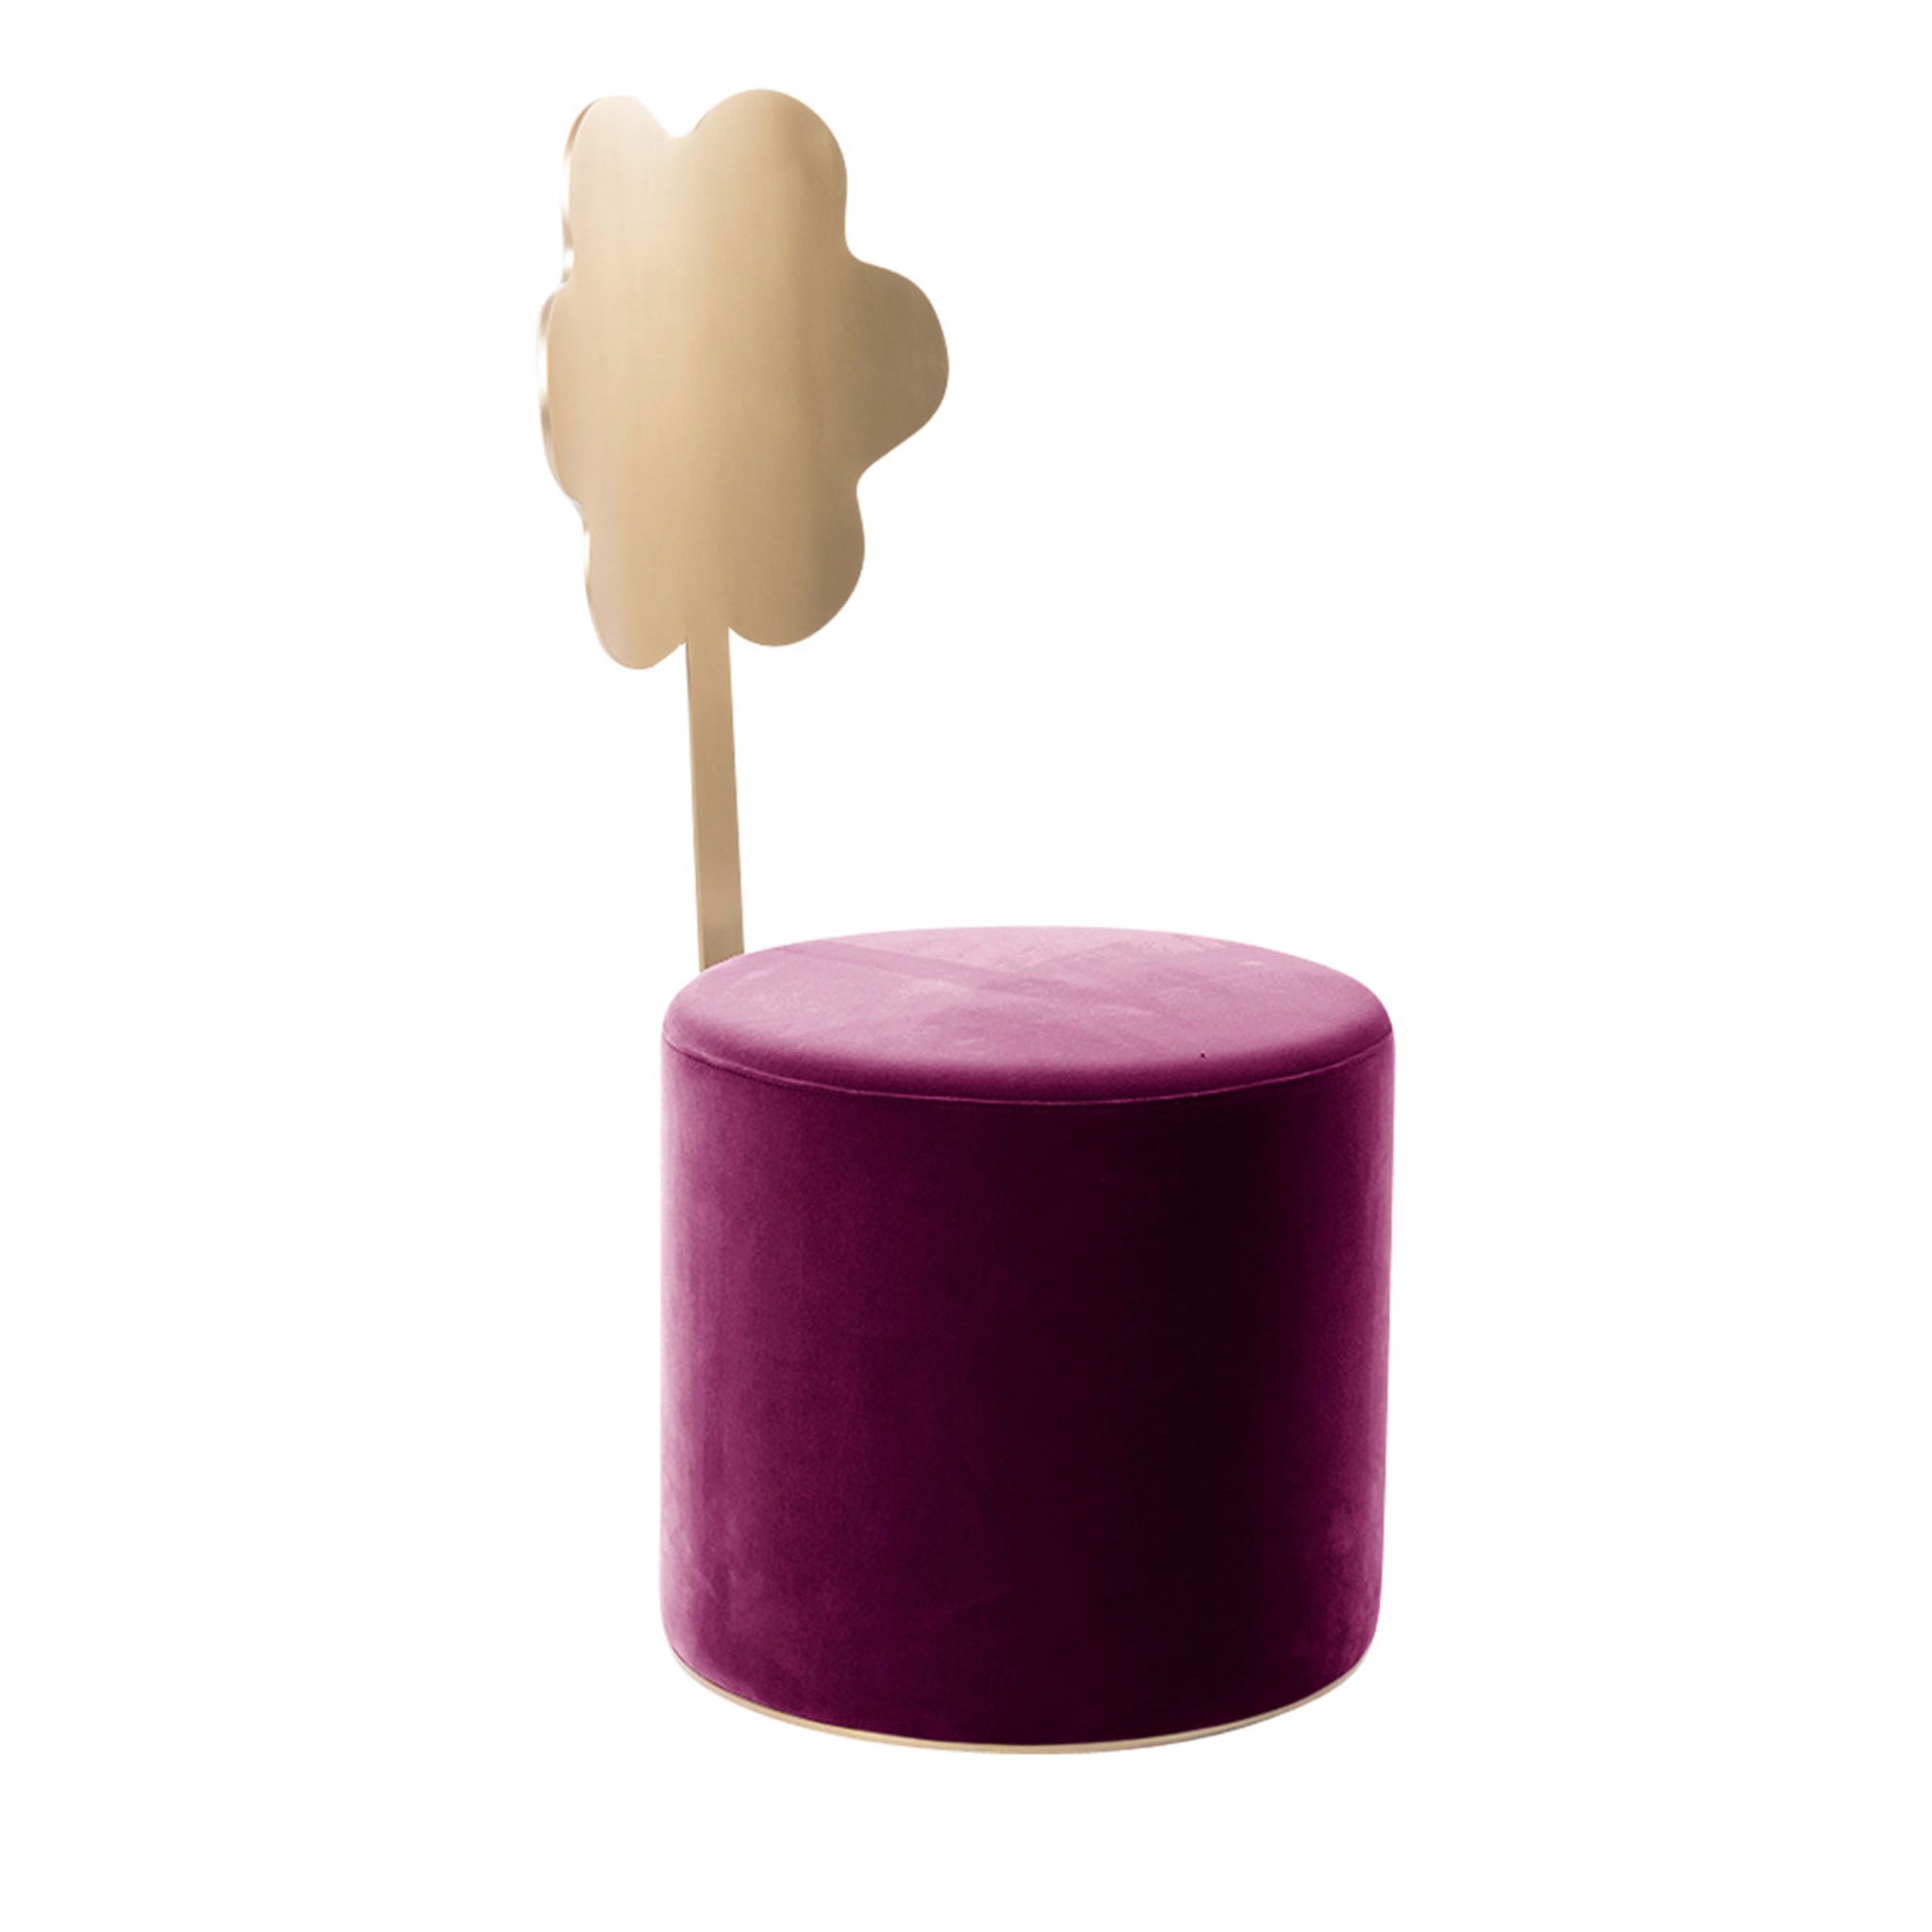 Daisy Purple Pouf by Artefatto Design Studio - Main view